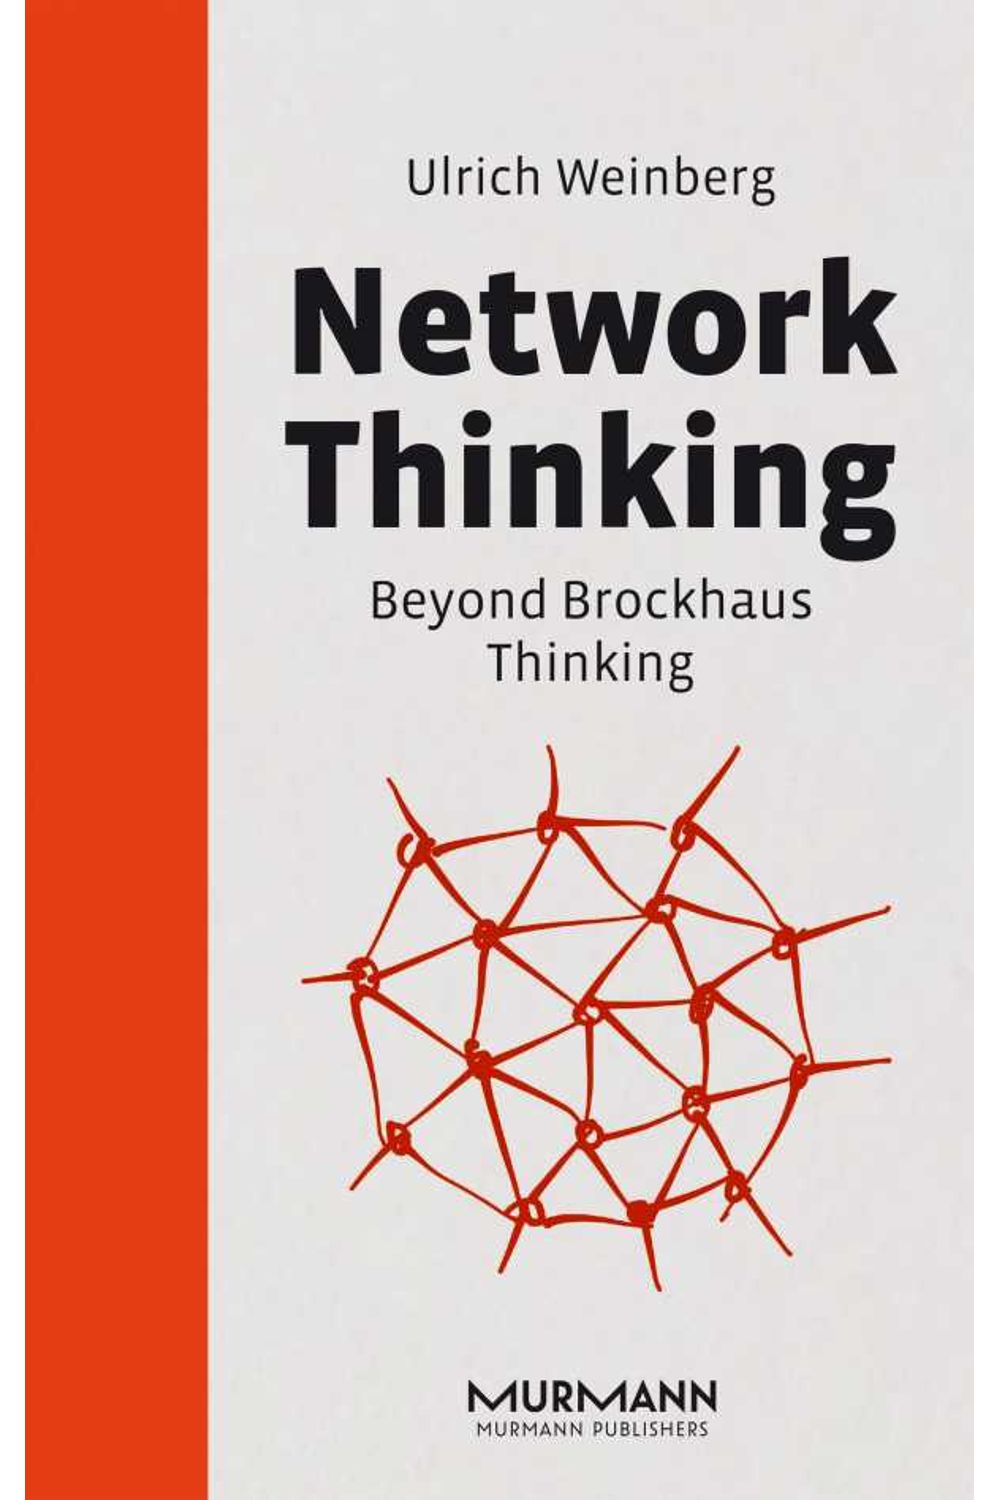 bw-network-thinking-murmann-publishers-gmbh-9783867745925